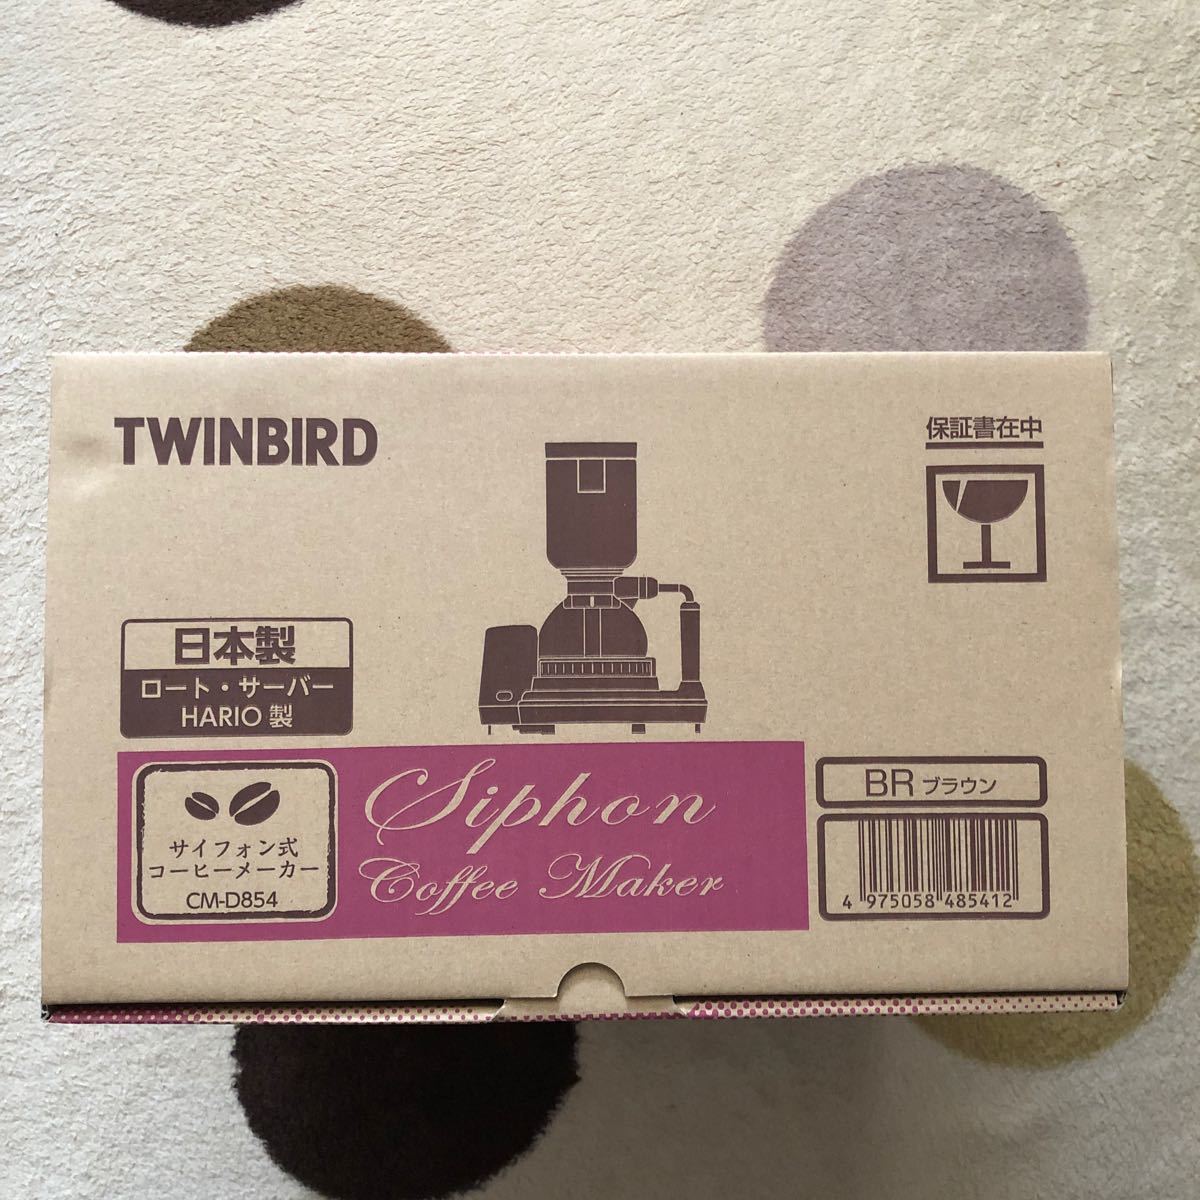 ツインバード サイフォン式コーヒーメーカー ブラウン TWINBIRD CM-D854BR 